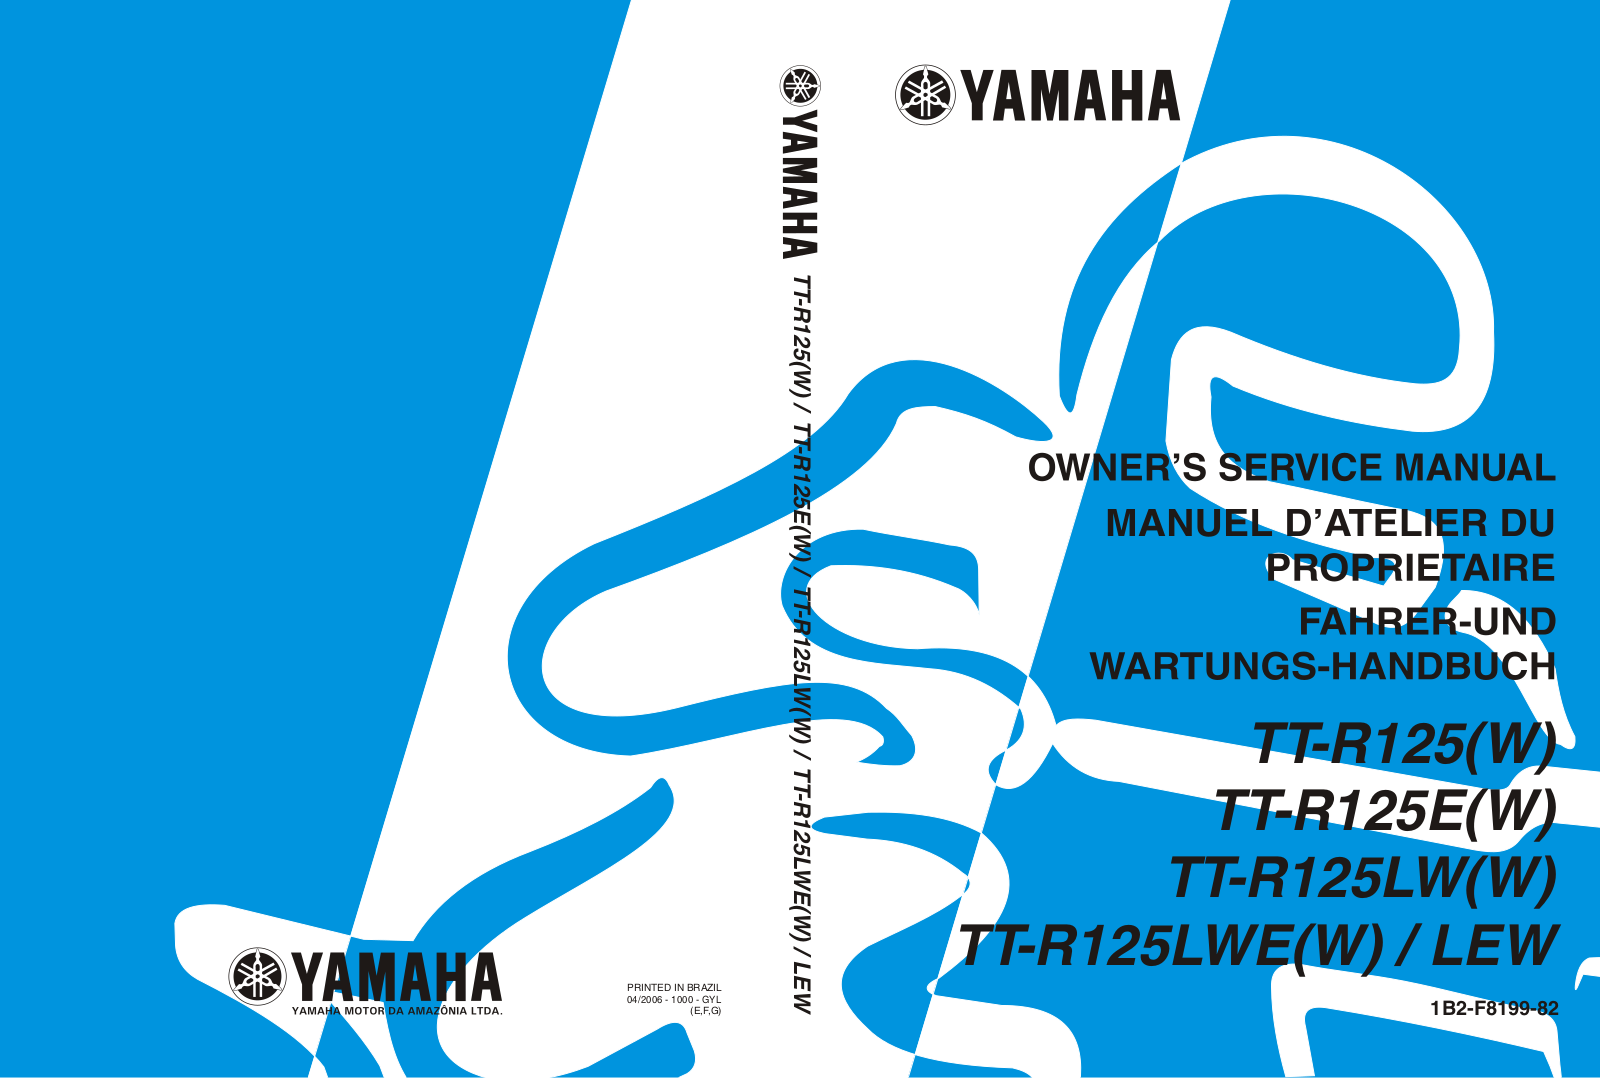 Yamaha TT-R125(W), TT-R125E(W), TT-R125LW(W), TT-R125LWE(W)/LEW User Manual